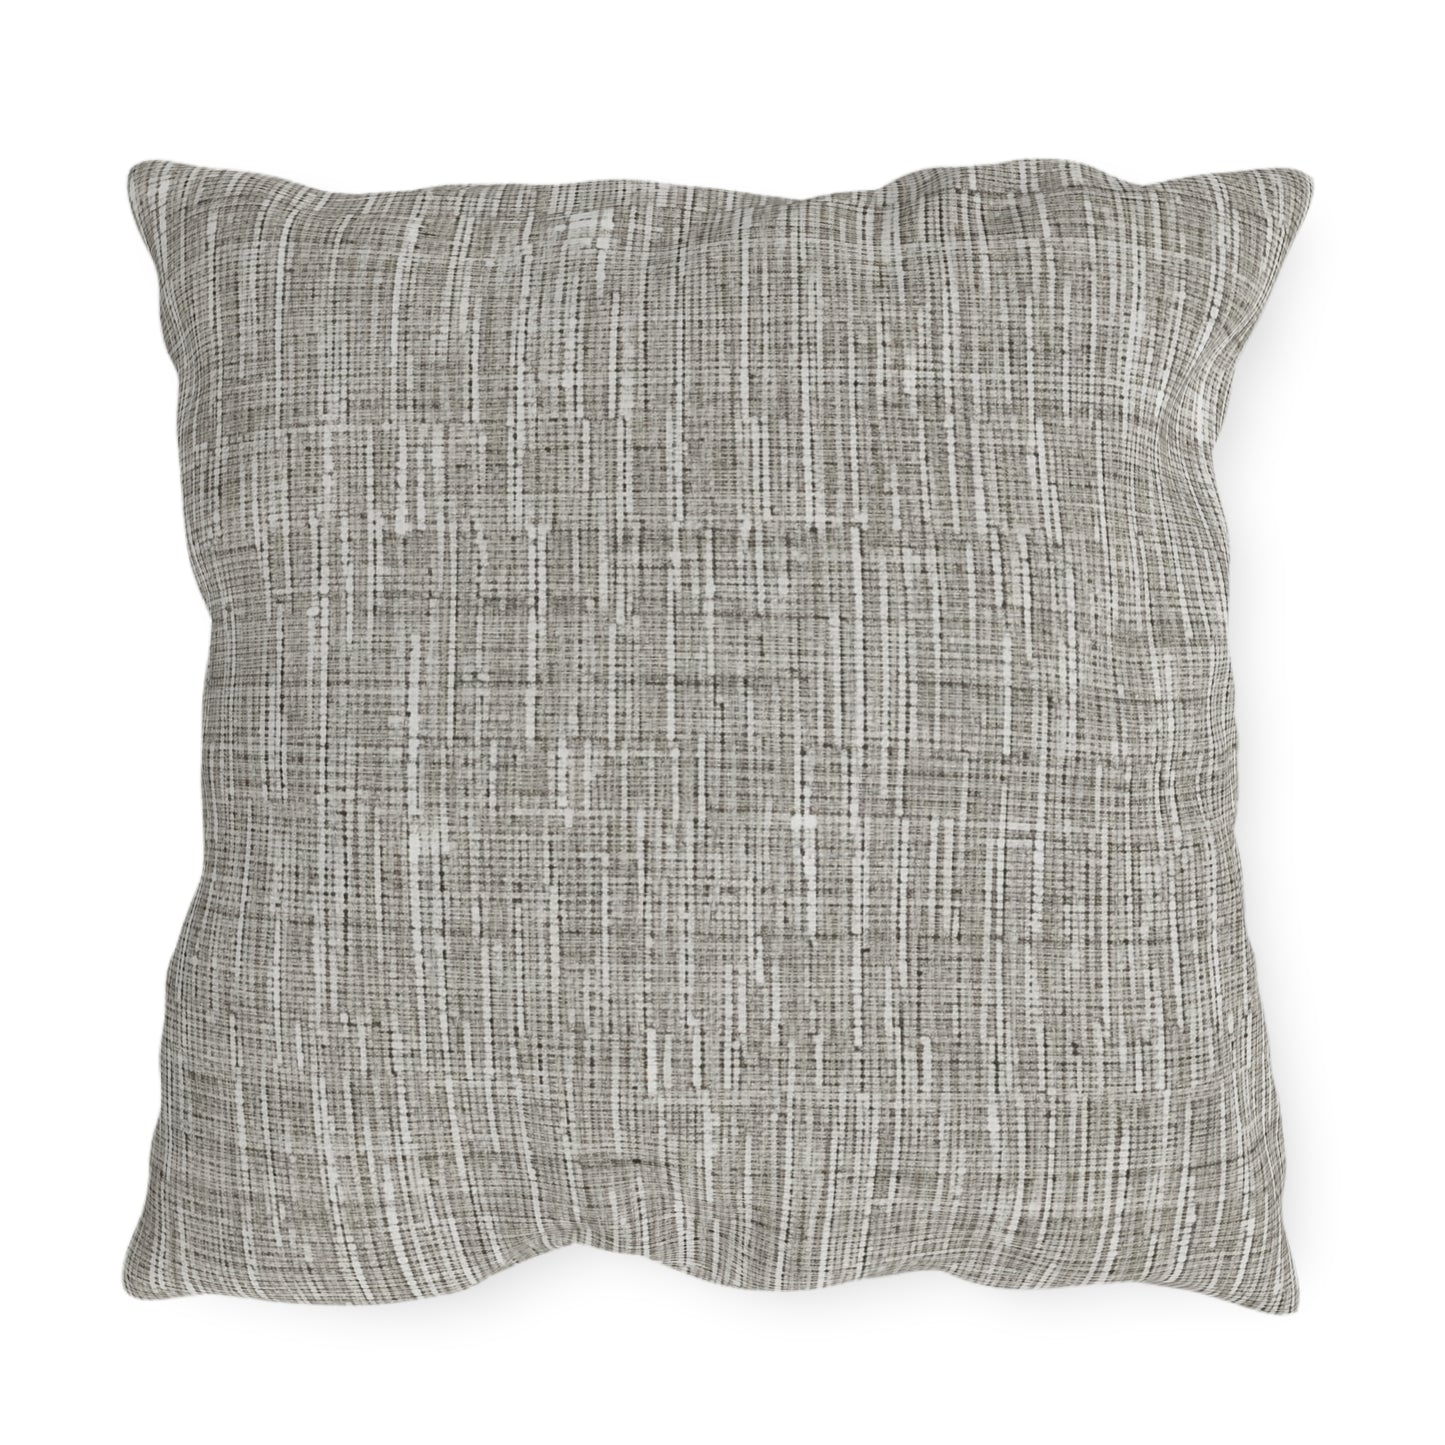 Silver Grey: Denim-Inspired, Contemporary Fabric Design - Outdoor Pillows